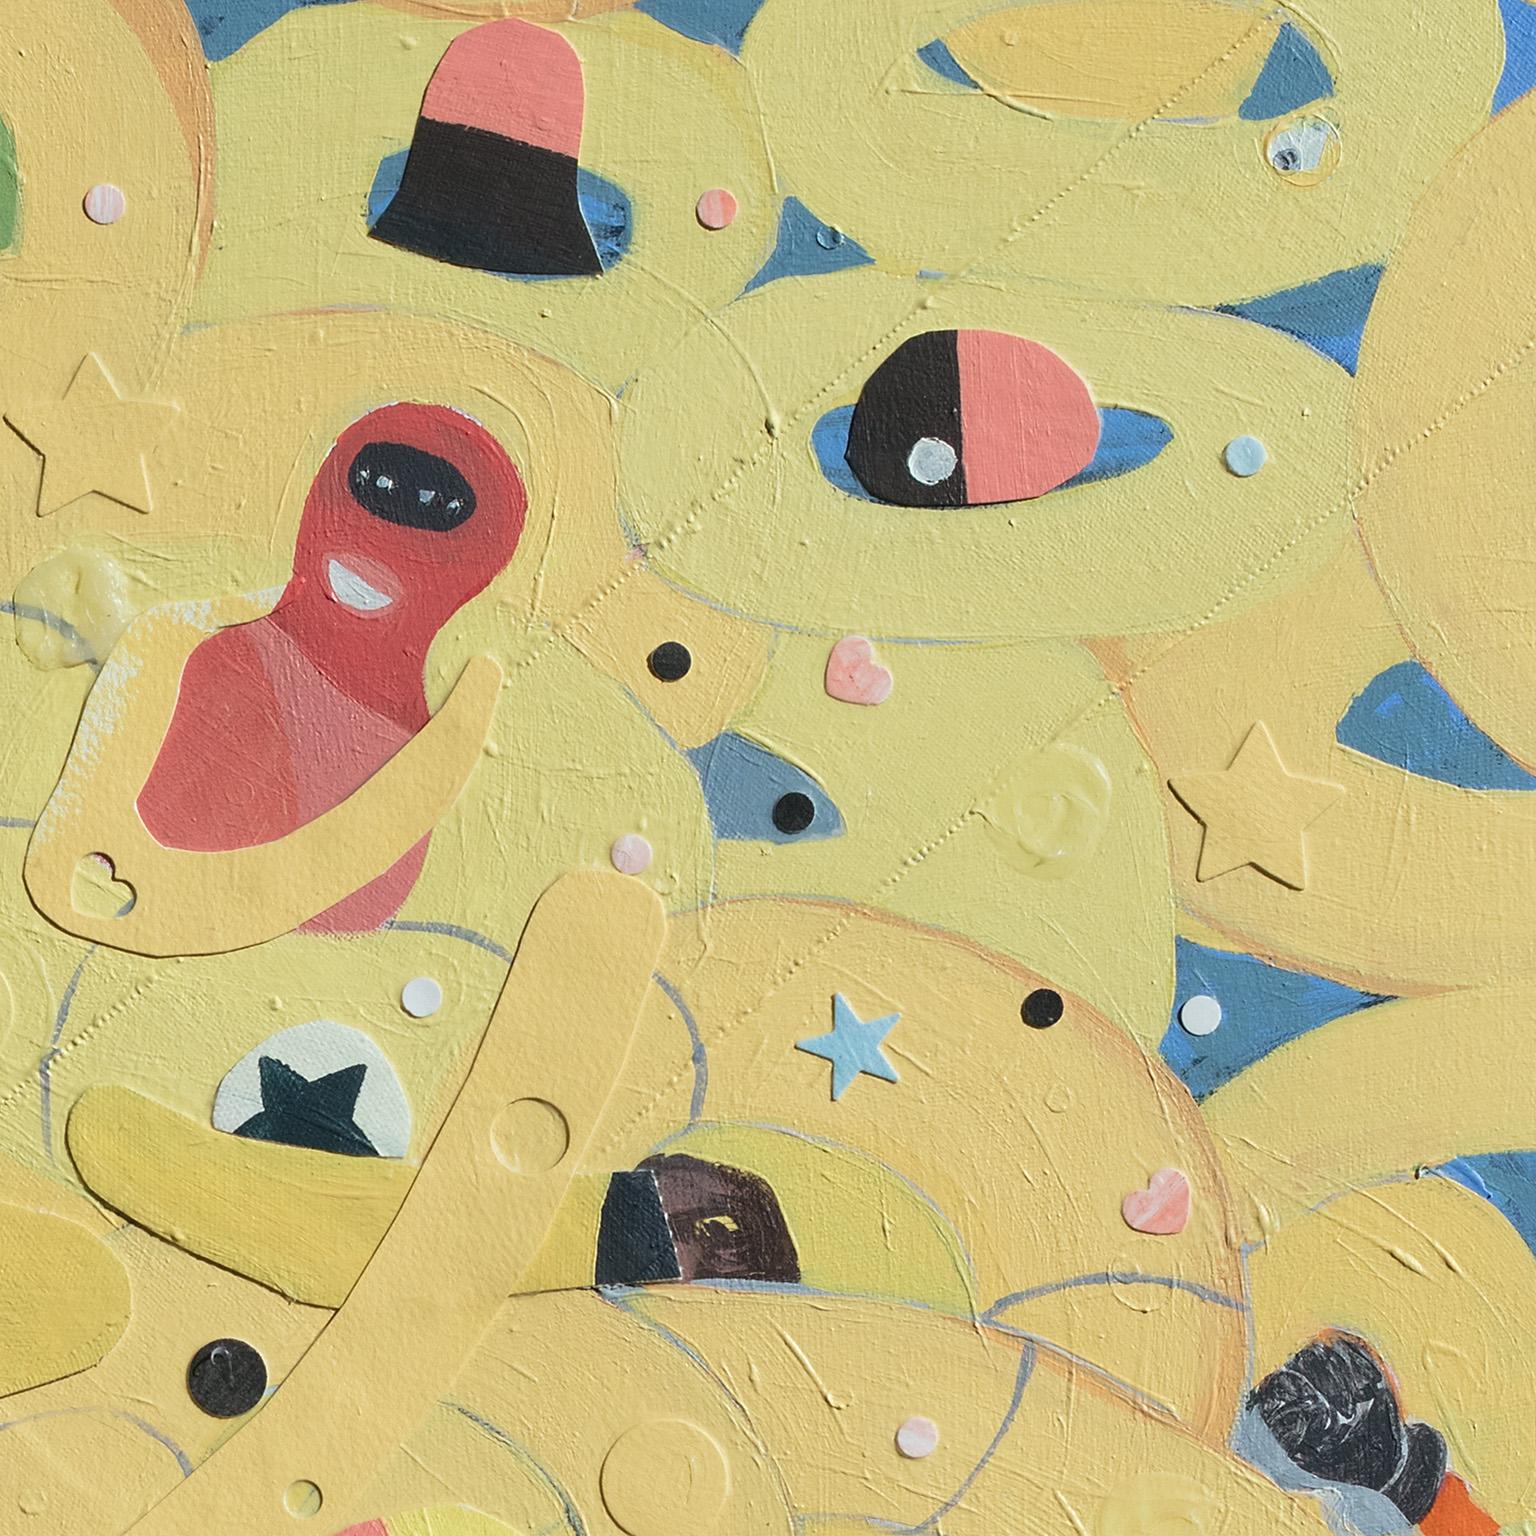 Francks Deceus' Spring Break Weekend #1 ist ein 30 x 24 Zoll großes Werk aus Acryl und Collage auf Leinwand. Die Hauptfarben sind Gelb und Blau. Das Bild ist sehr verspielt, mit vielen Figuren in bunten Anzügen, die in gelben Eimern schweben. Das